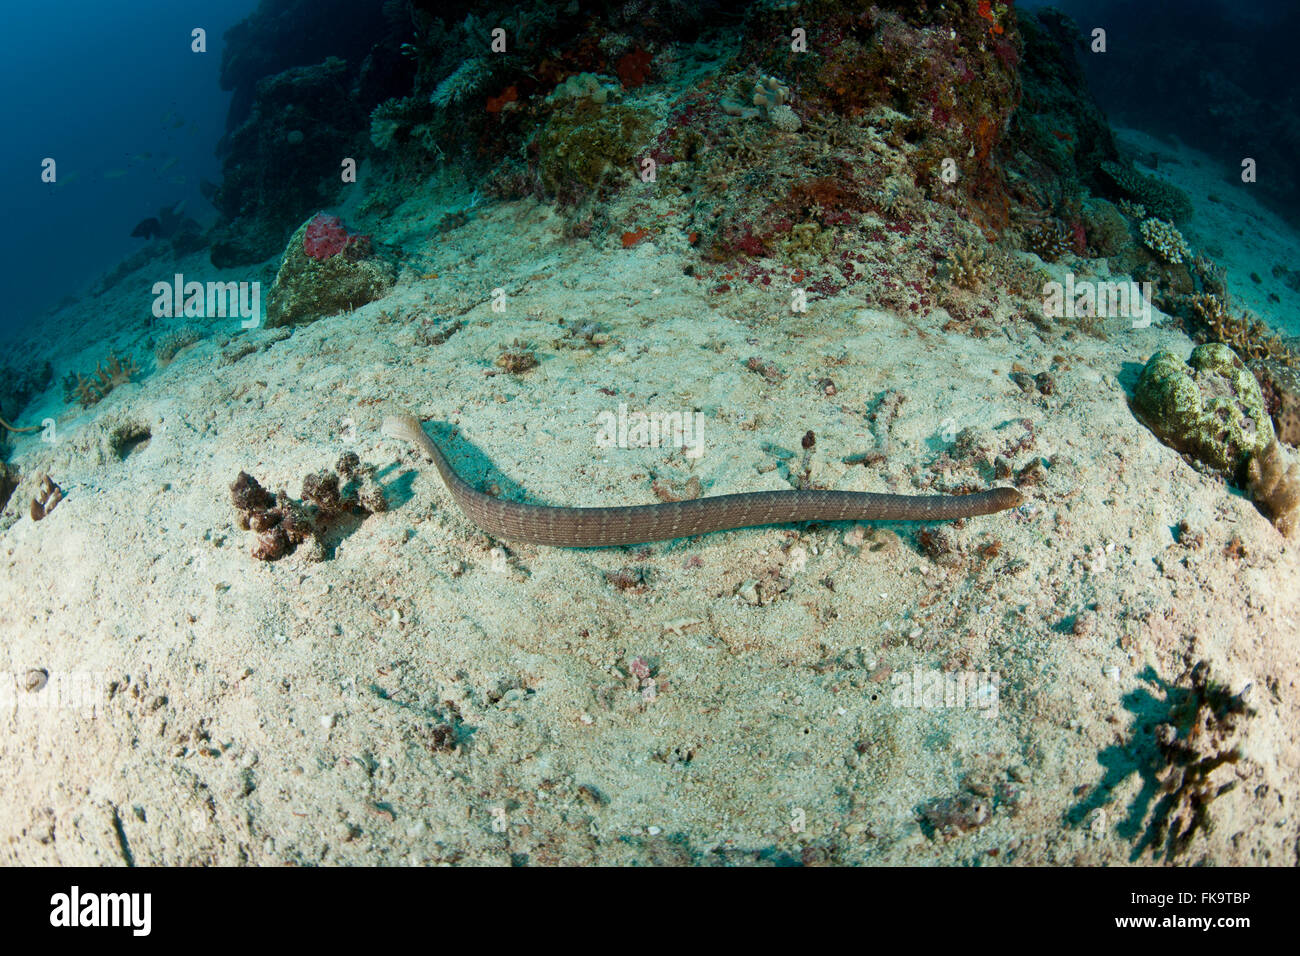 Oliva, serpiente de mar (Aipysurus laevis) especies de serpientes de mar venenosas encontrados en el Indo-Pacífico Foto de stock